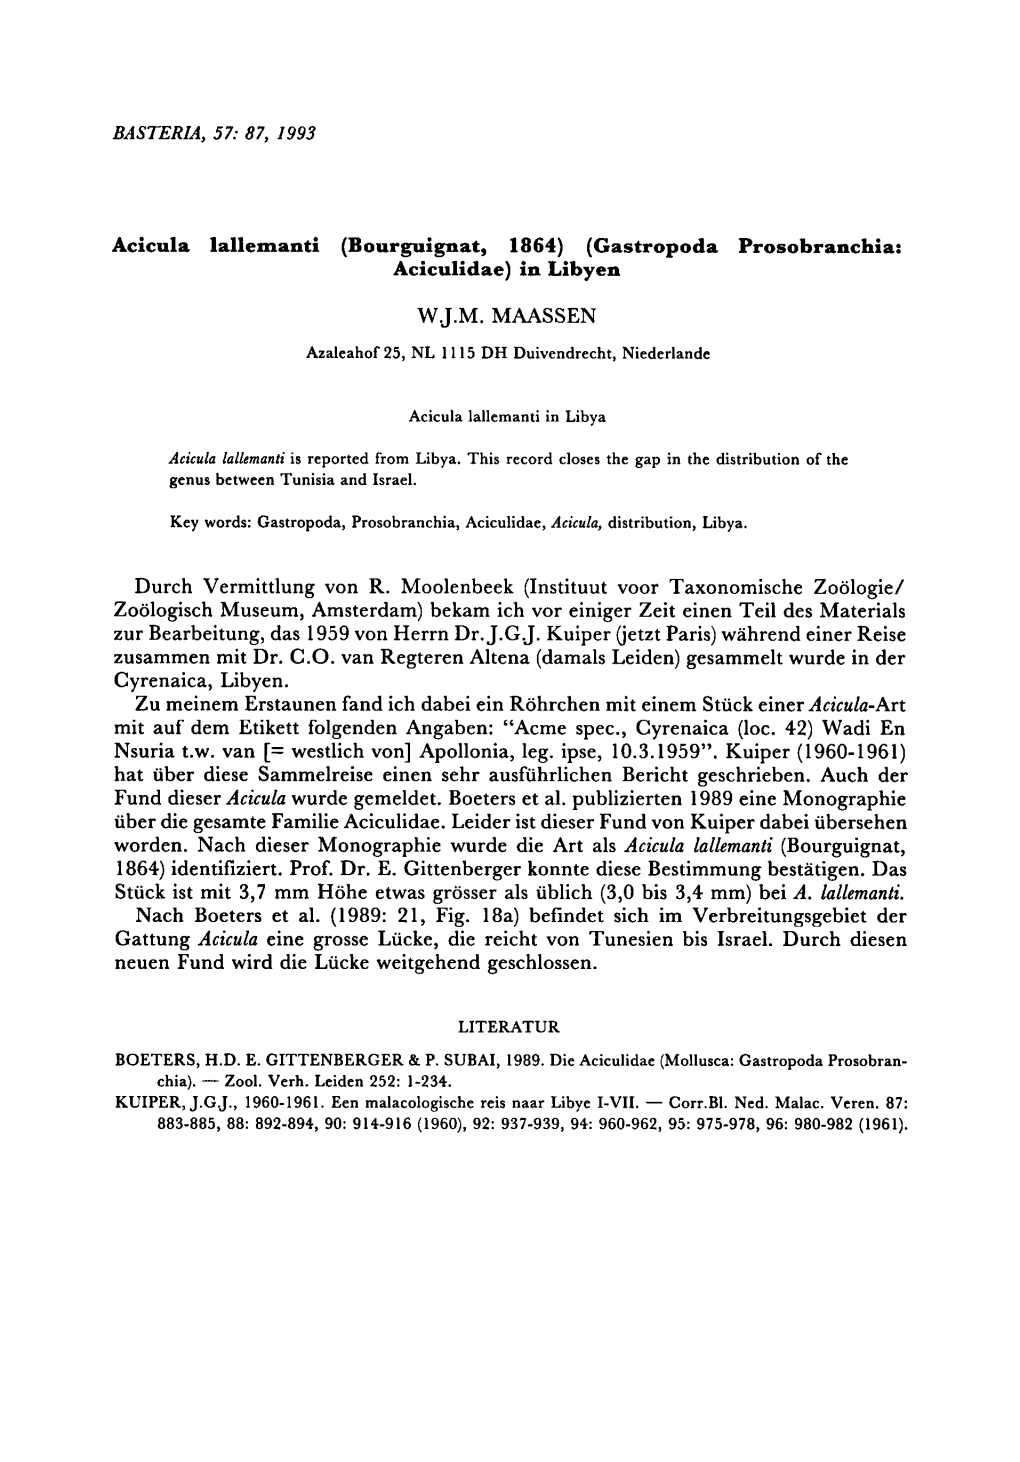 1989: Verbreitungsgebiet Gattung Acicula